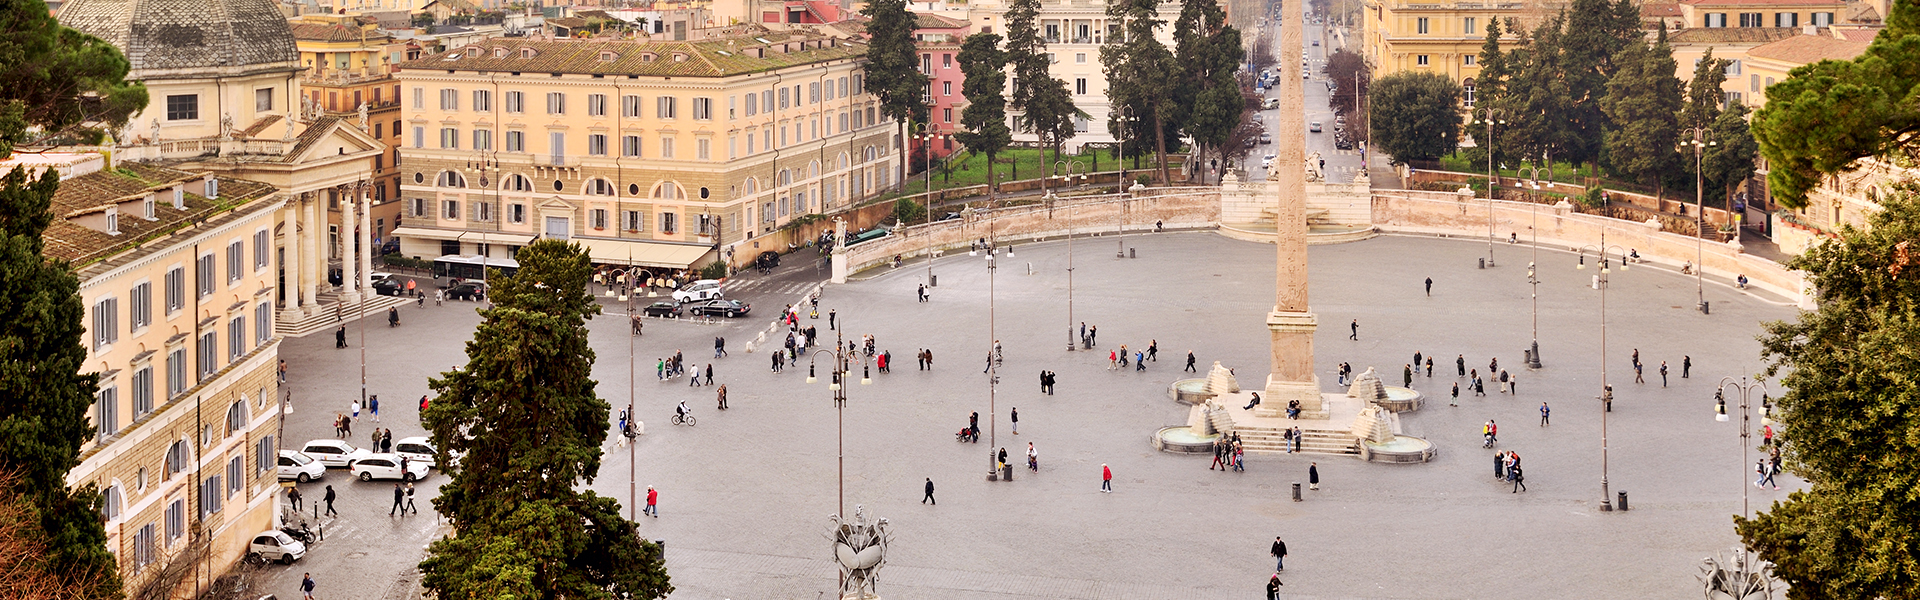 Una panorámica de Piazza del Popolo